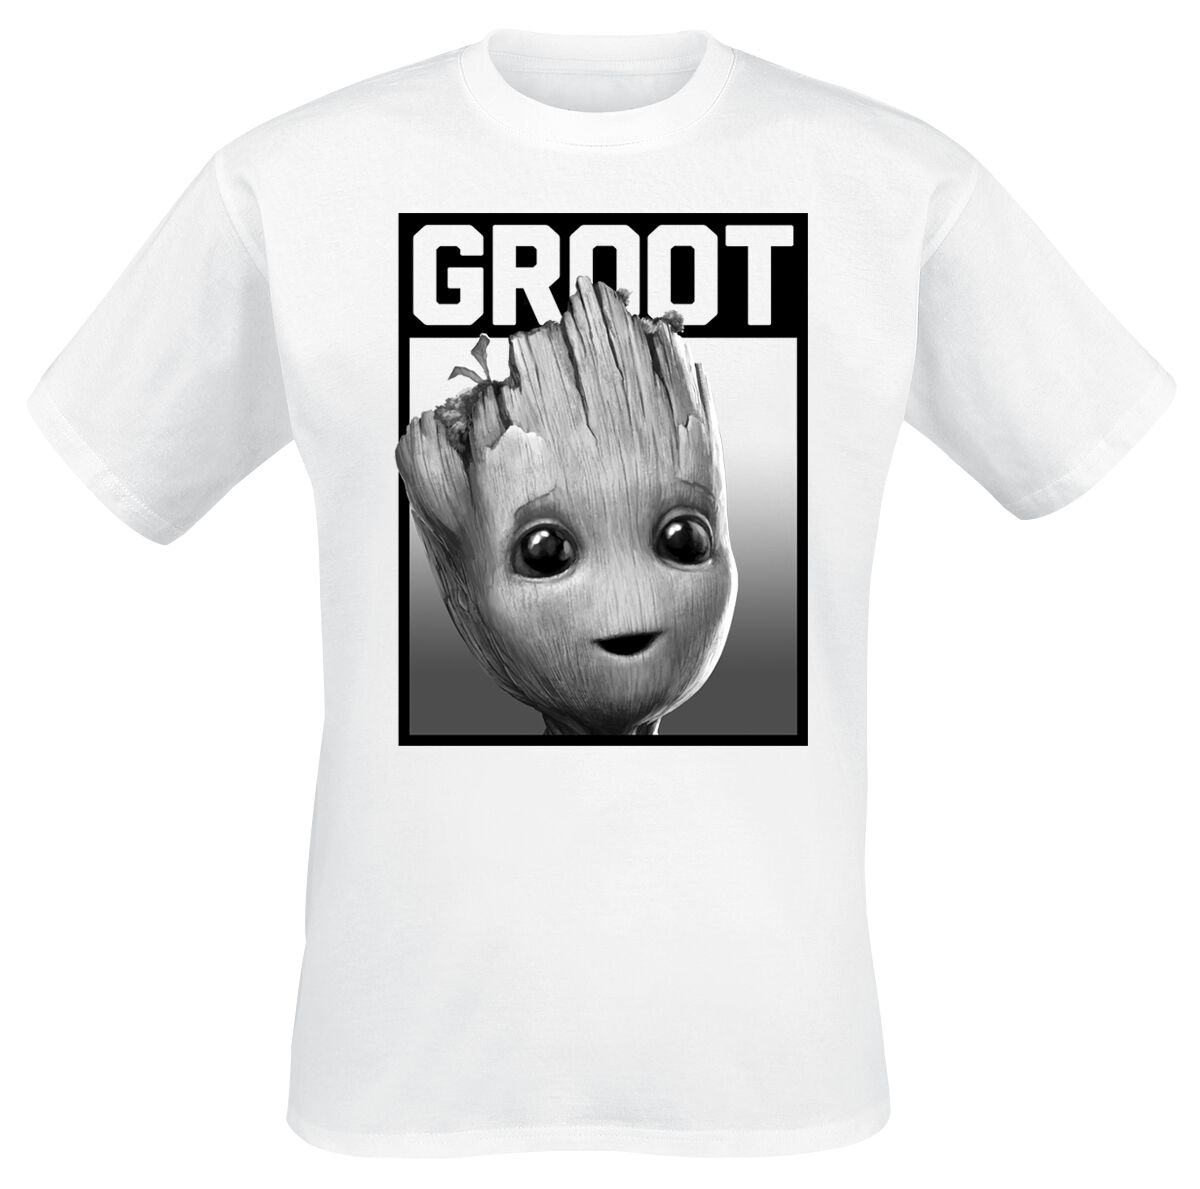 Guardians Of The Galaxy - Marvel T-Shirt - Groot - Square - 4XL - für Männer - Größe 4XL - weiß  - EMP exklusives Merchandise!